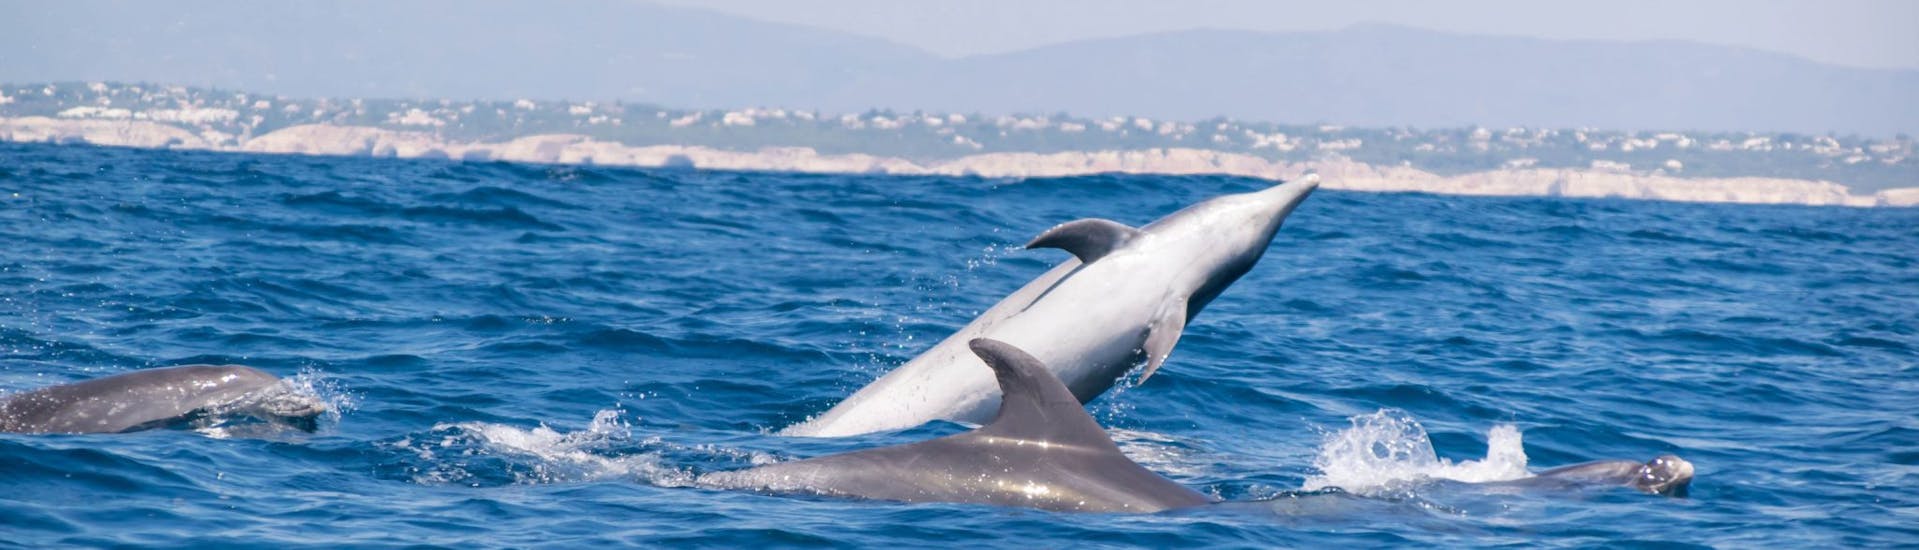 Les dauphins qui peuvent être vus pendant la Balade en bateau à la grotte de Benagil avec observation des dauphins avec 5emotions Algarve - Portimão.